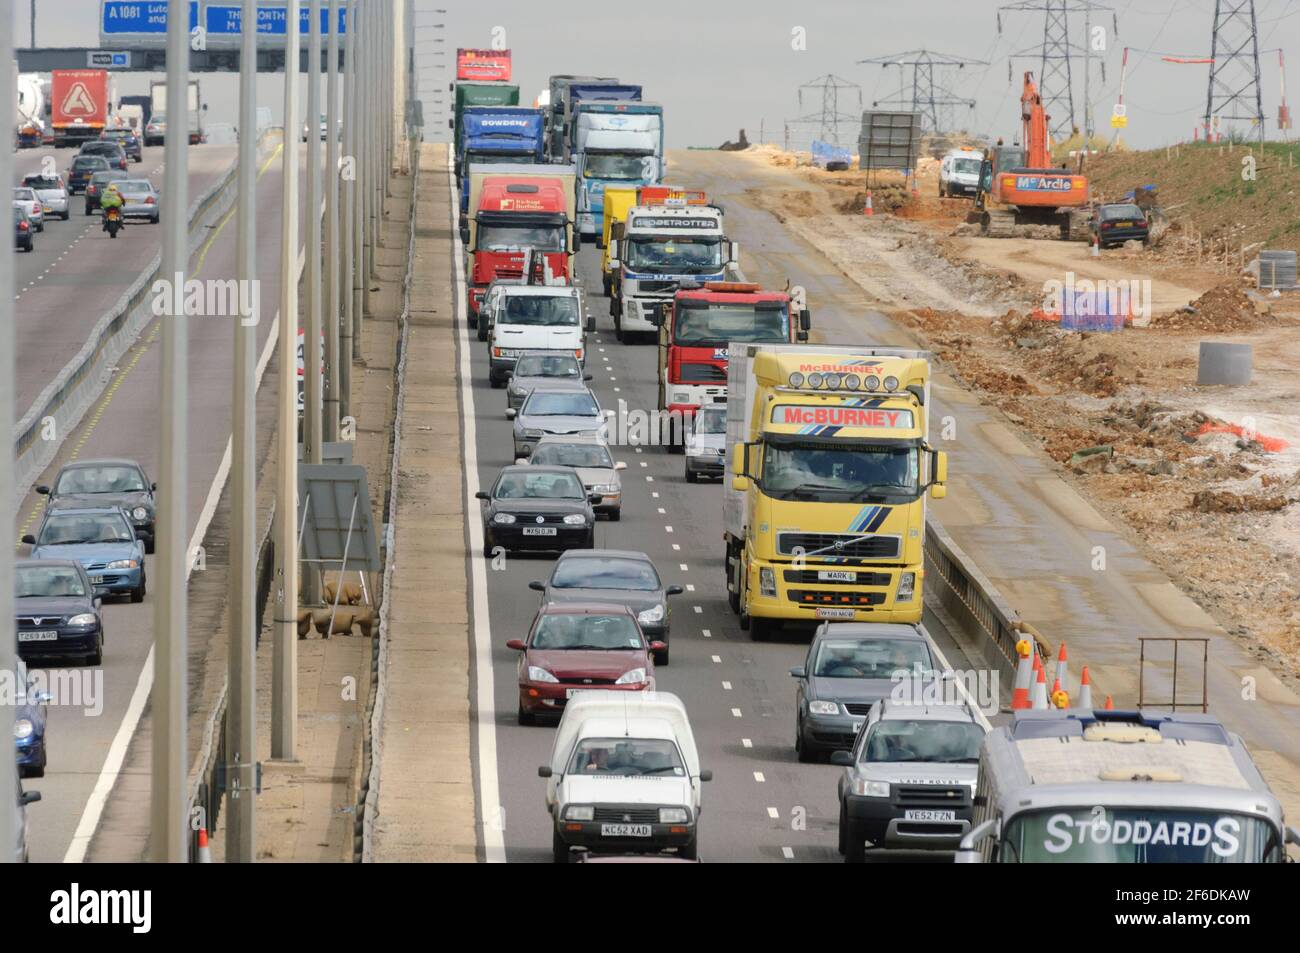 Starke Verkehrsstaus aufgrund von Straßenbauarbeiten, Autobahn M1 bei Luton, zwischen Kreuzung 25/26. Autobahn M1, in der Nähe von Luton, Bedfordshire, Großbritannien. August 2006, 2 Stockfoto